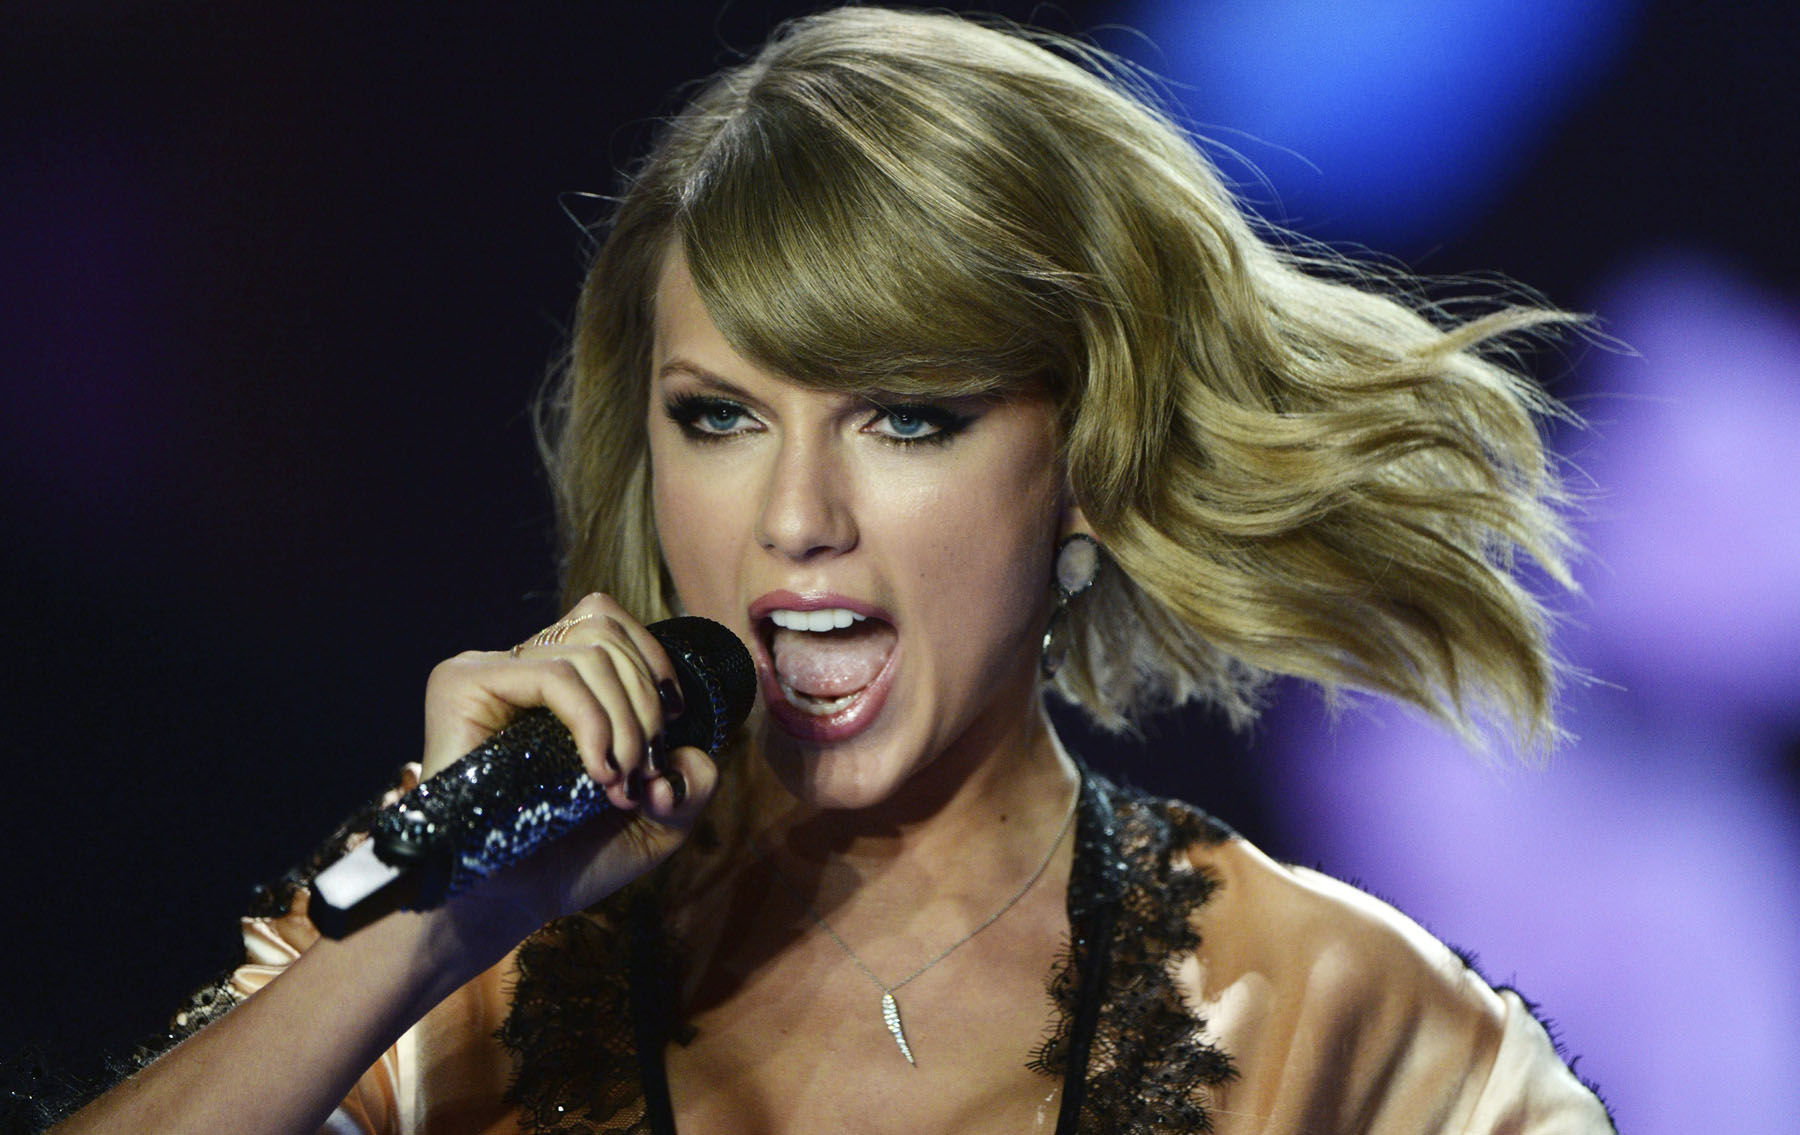 Con estas imágenes fotógrafos boicotearon exigencias de Taylor Swift